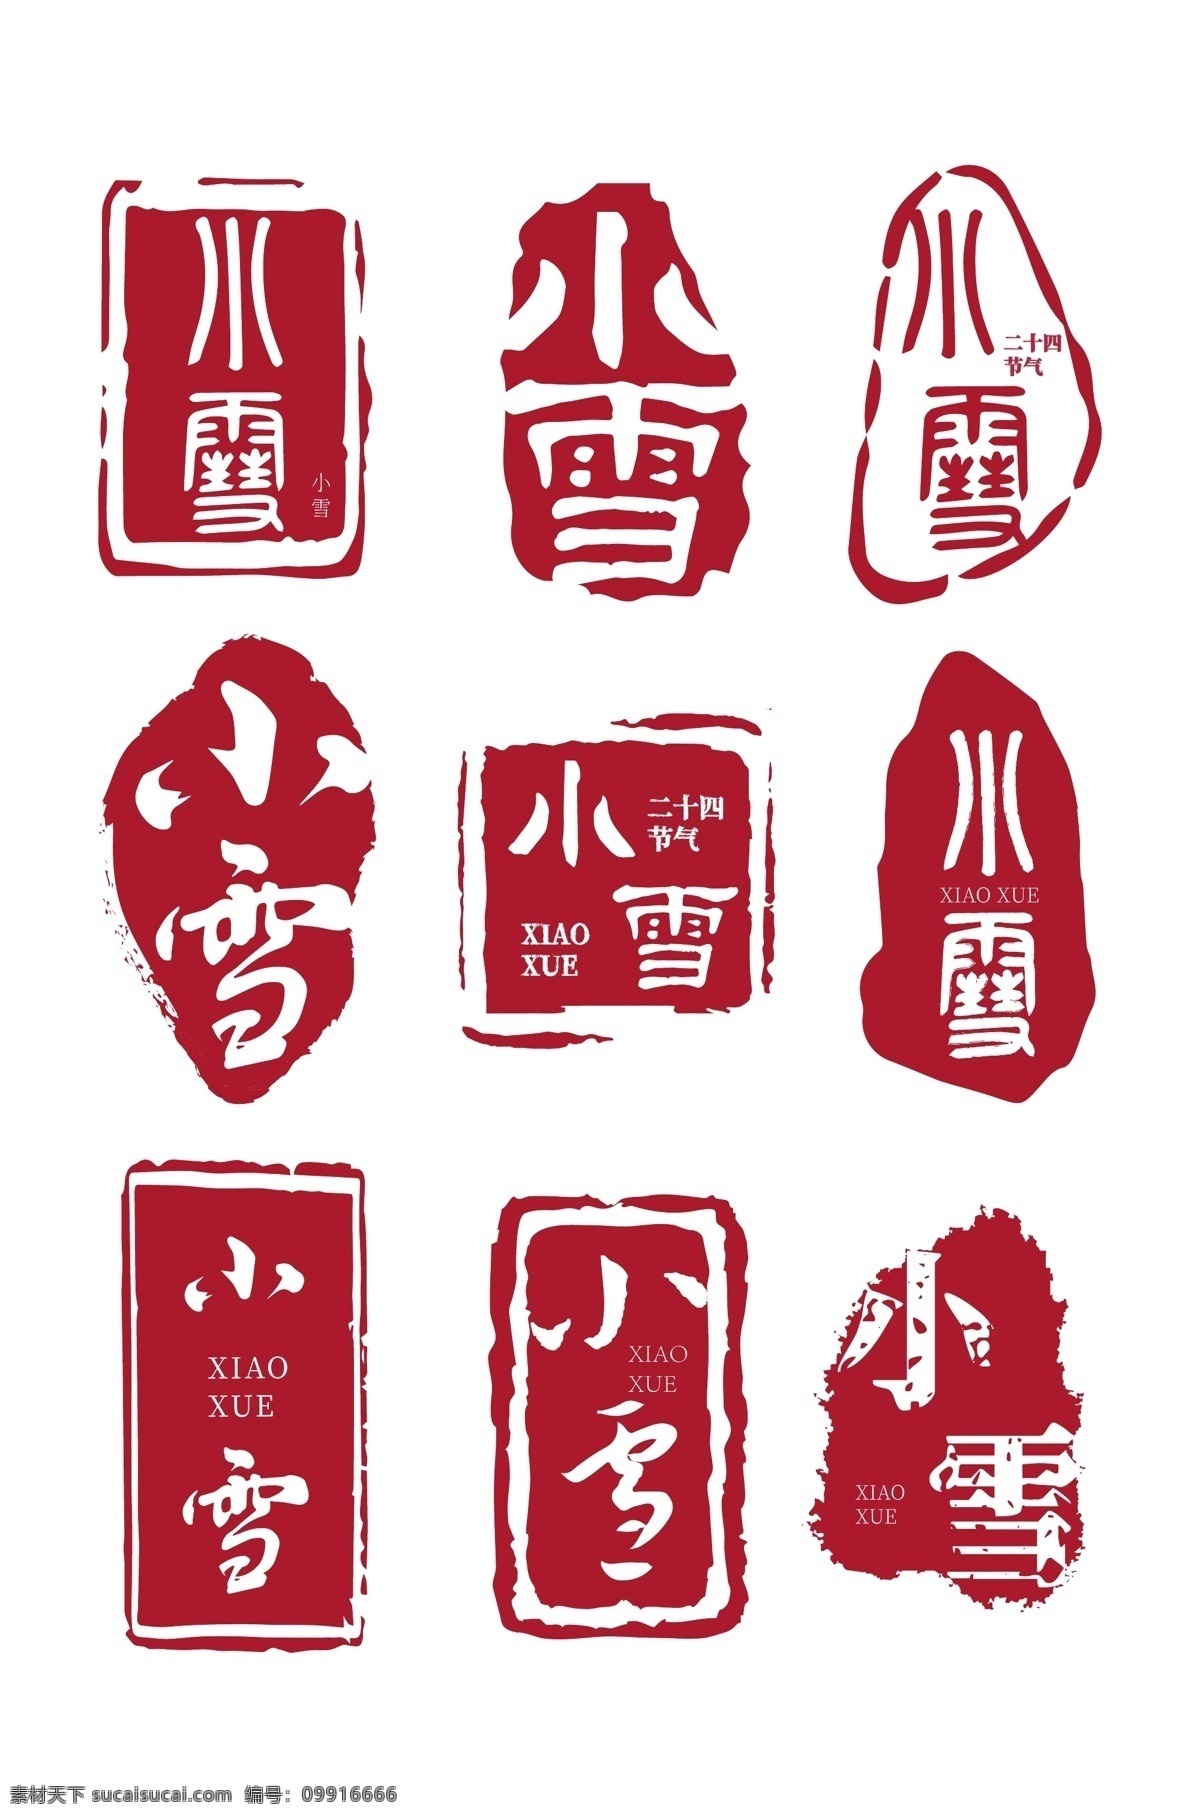 古风 印章 字体 套 图 中国风印章 红色印章字体 鼠年印章字体 新年印章字体 红色印章 国潮印章 logo印章 字体印章